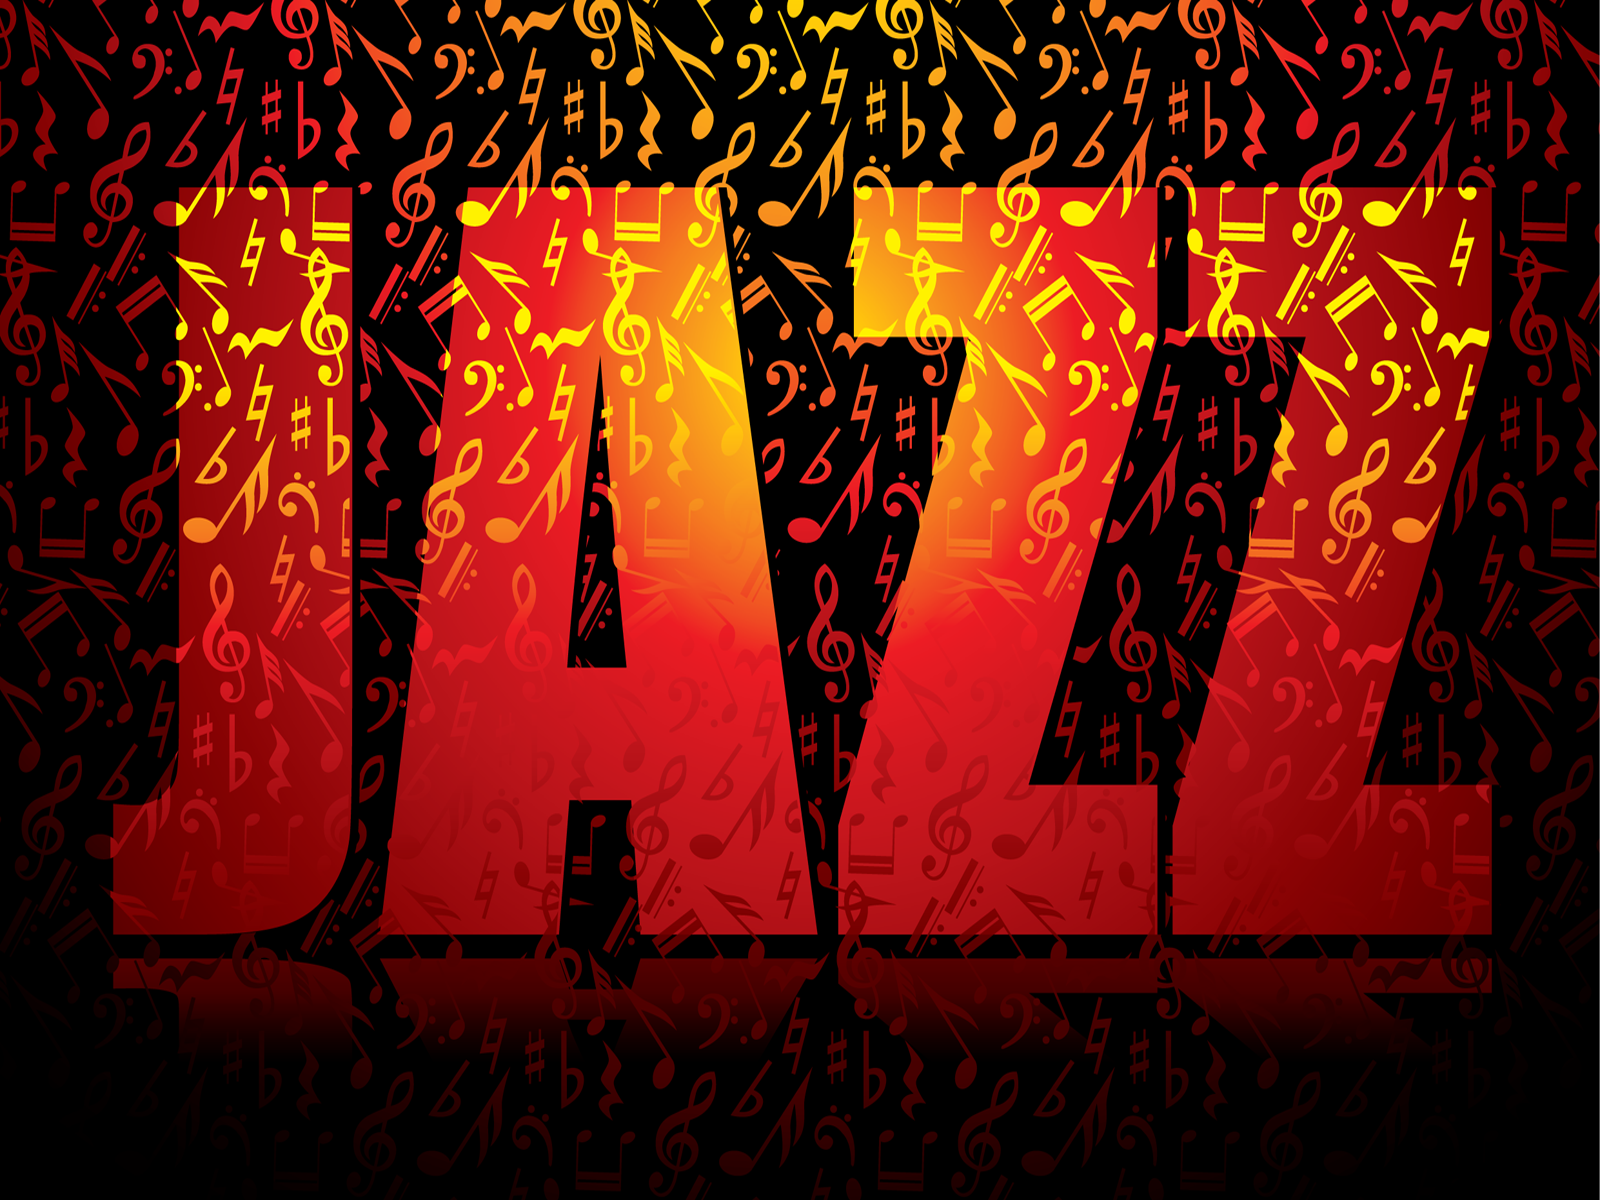 Jazz Night Fundraiser